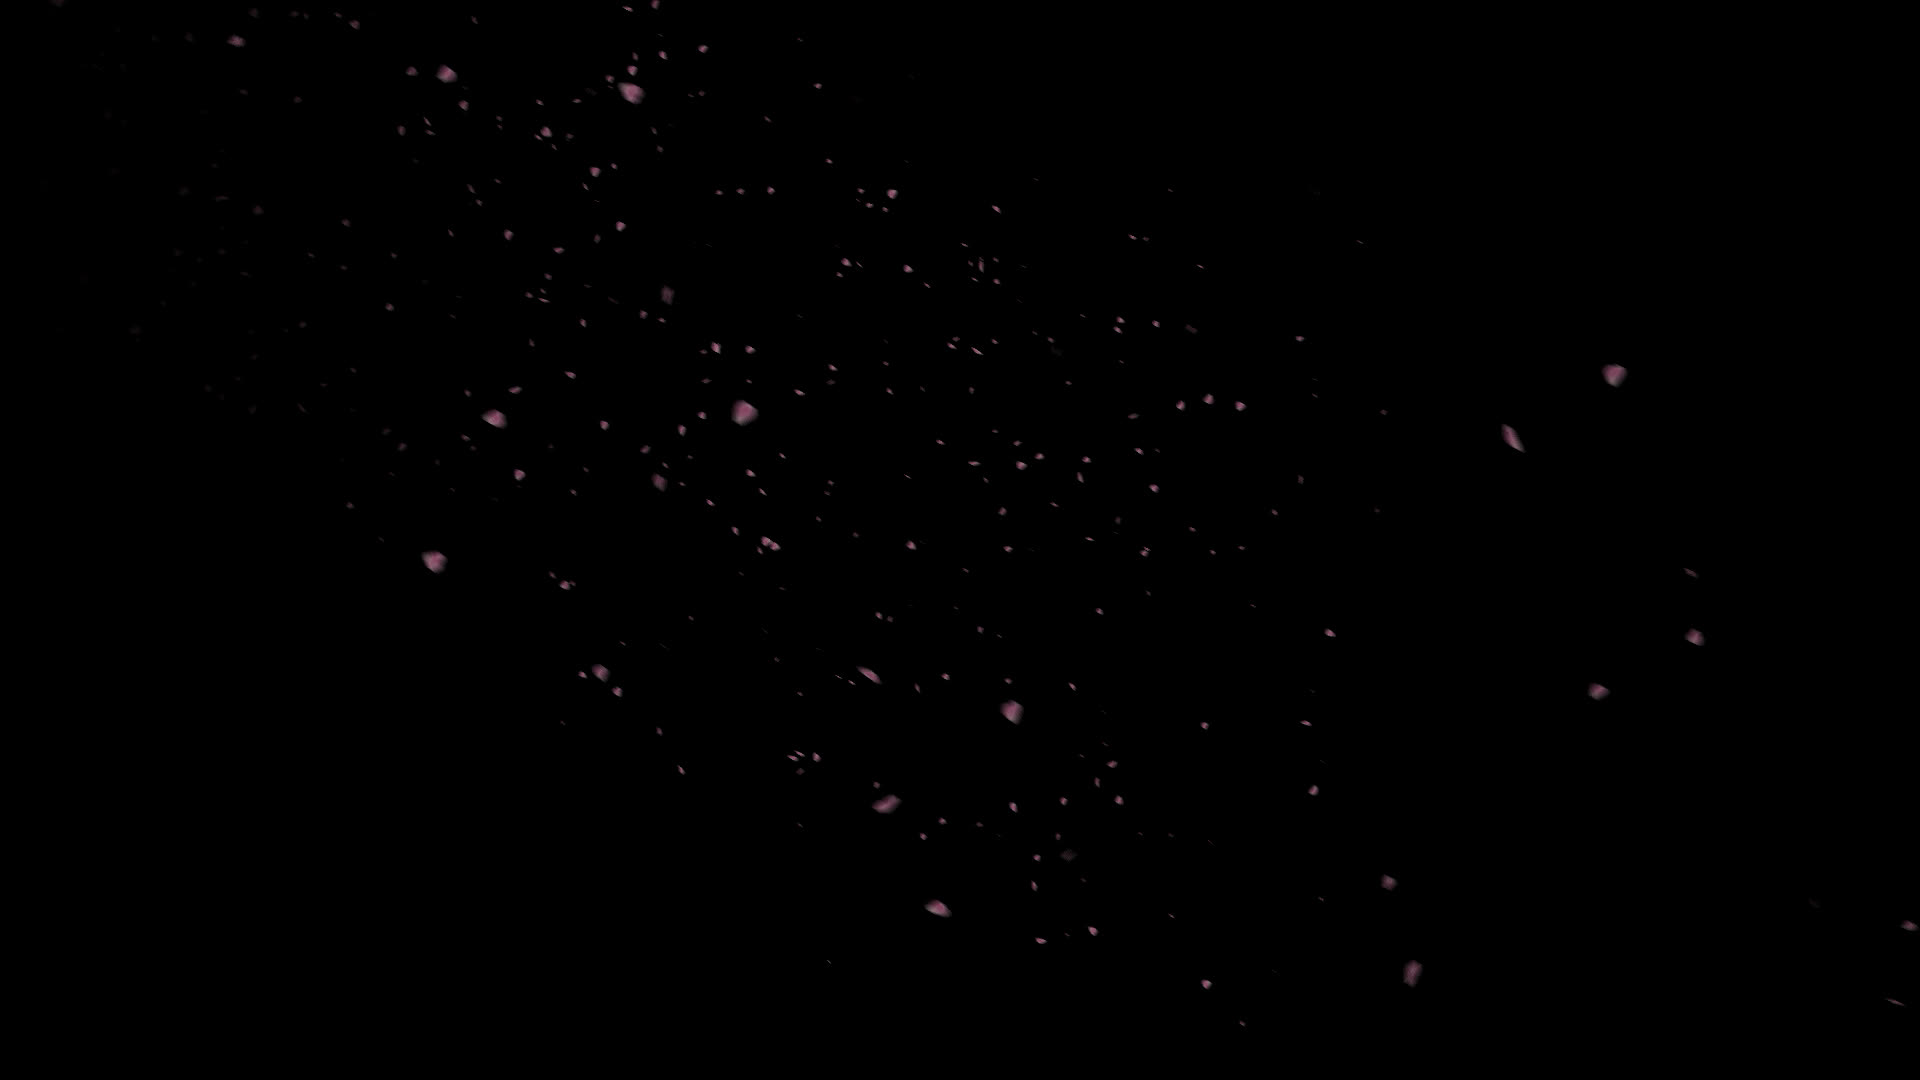 桜の花びらが舞い落ちる無料動画素材 映像制作向け D Elf